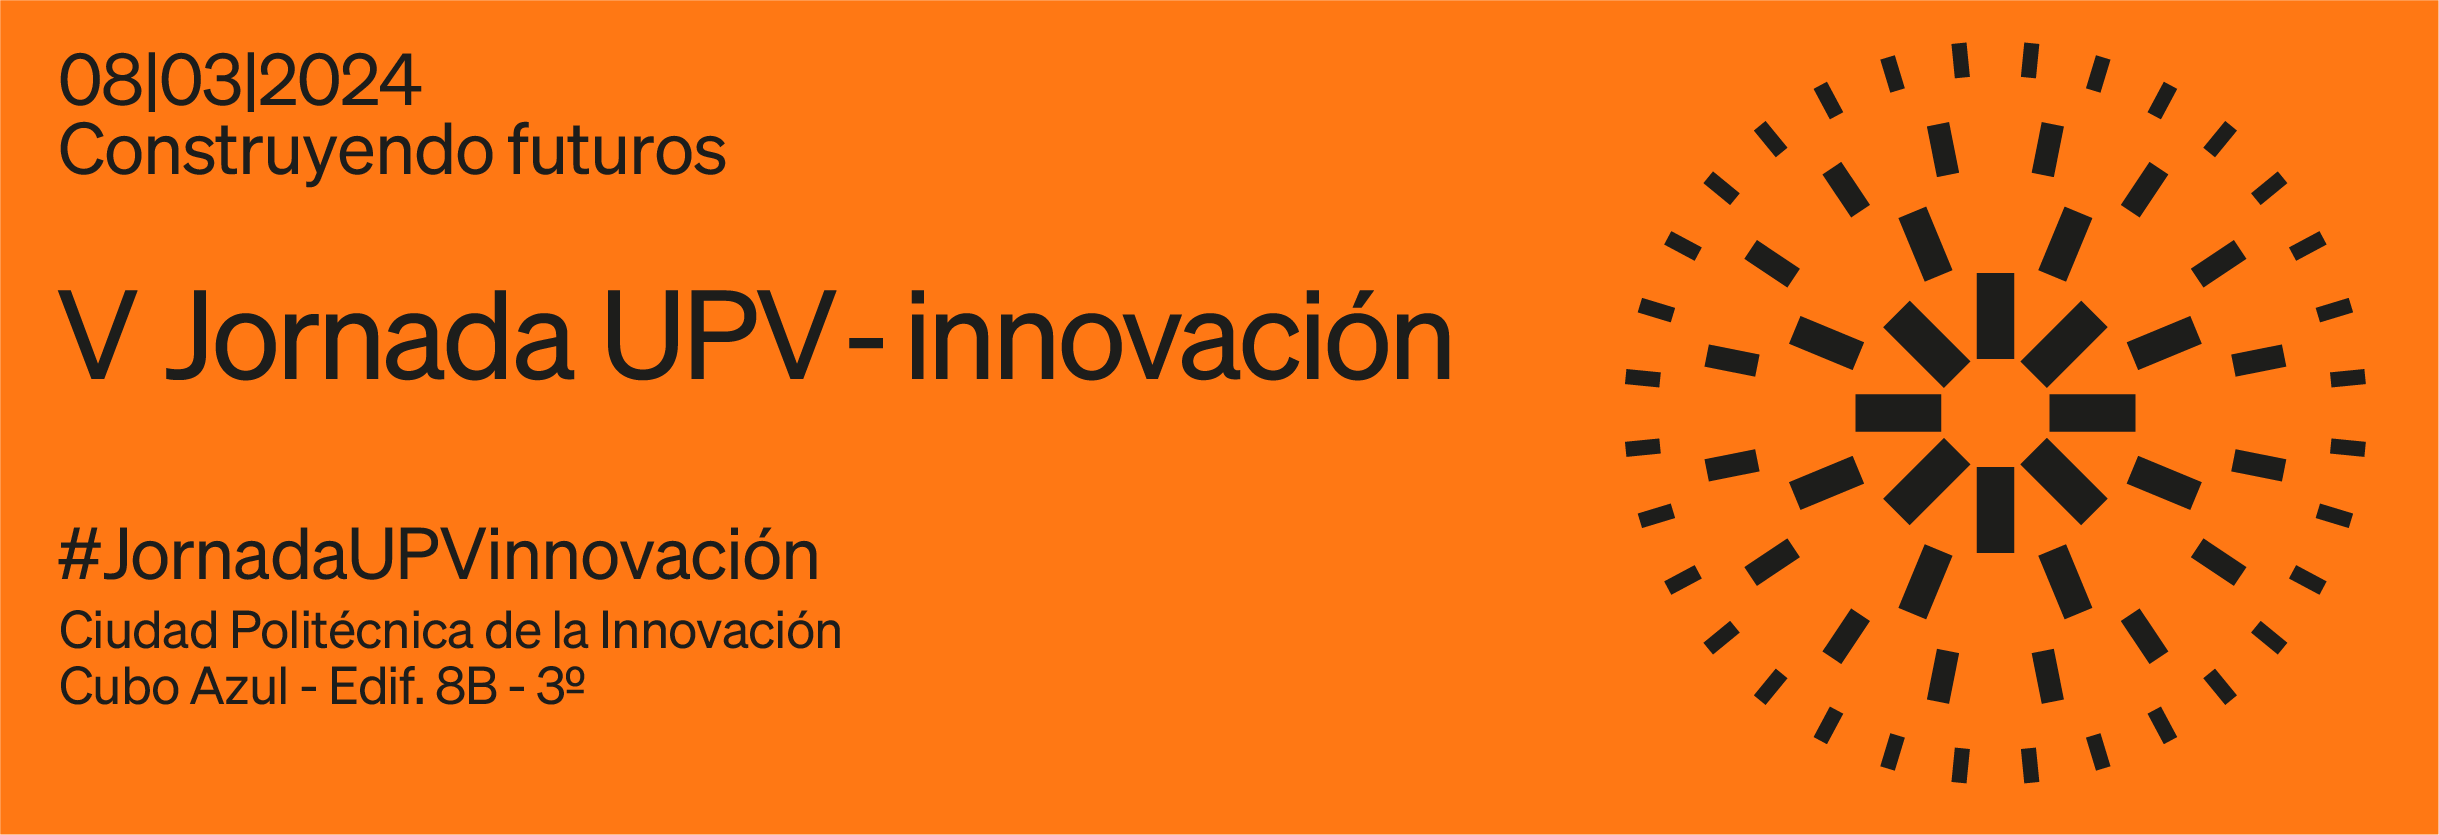 V Jornada UPV Innovación